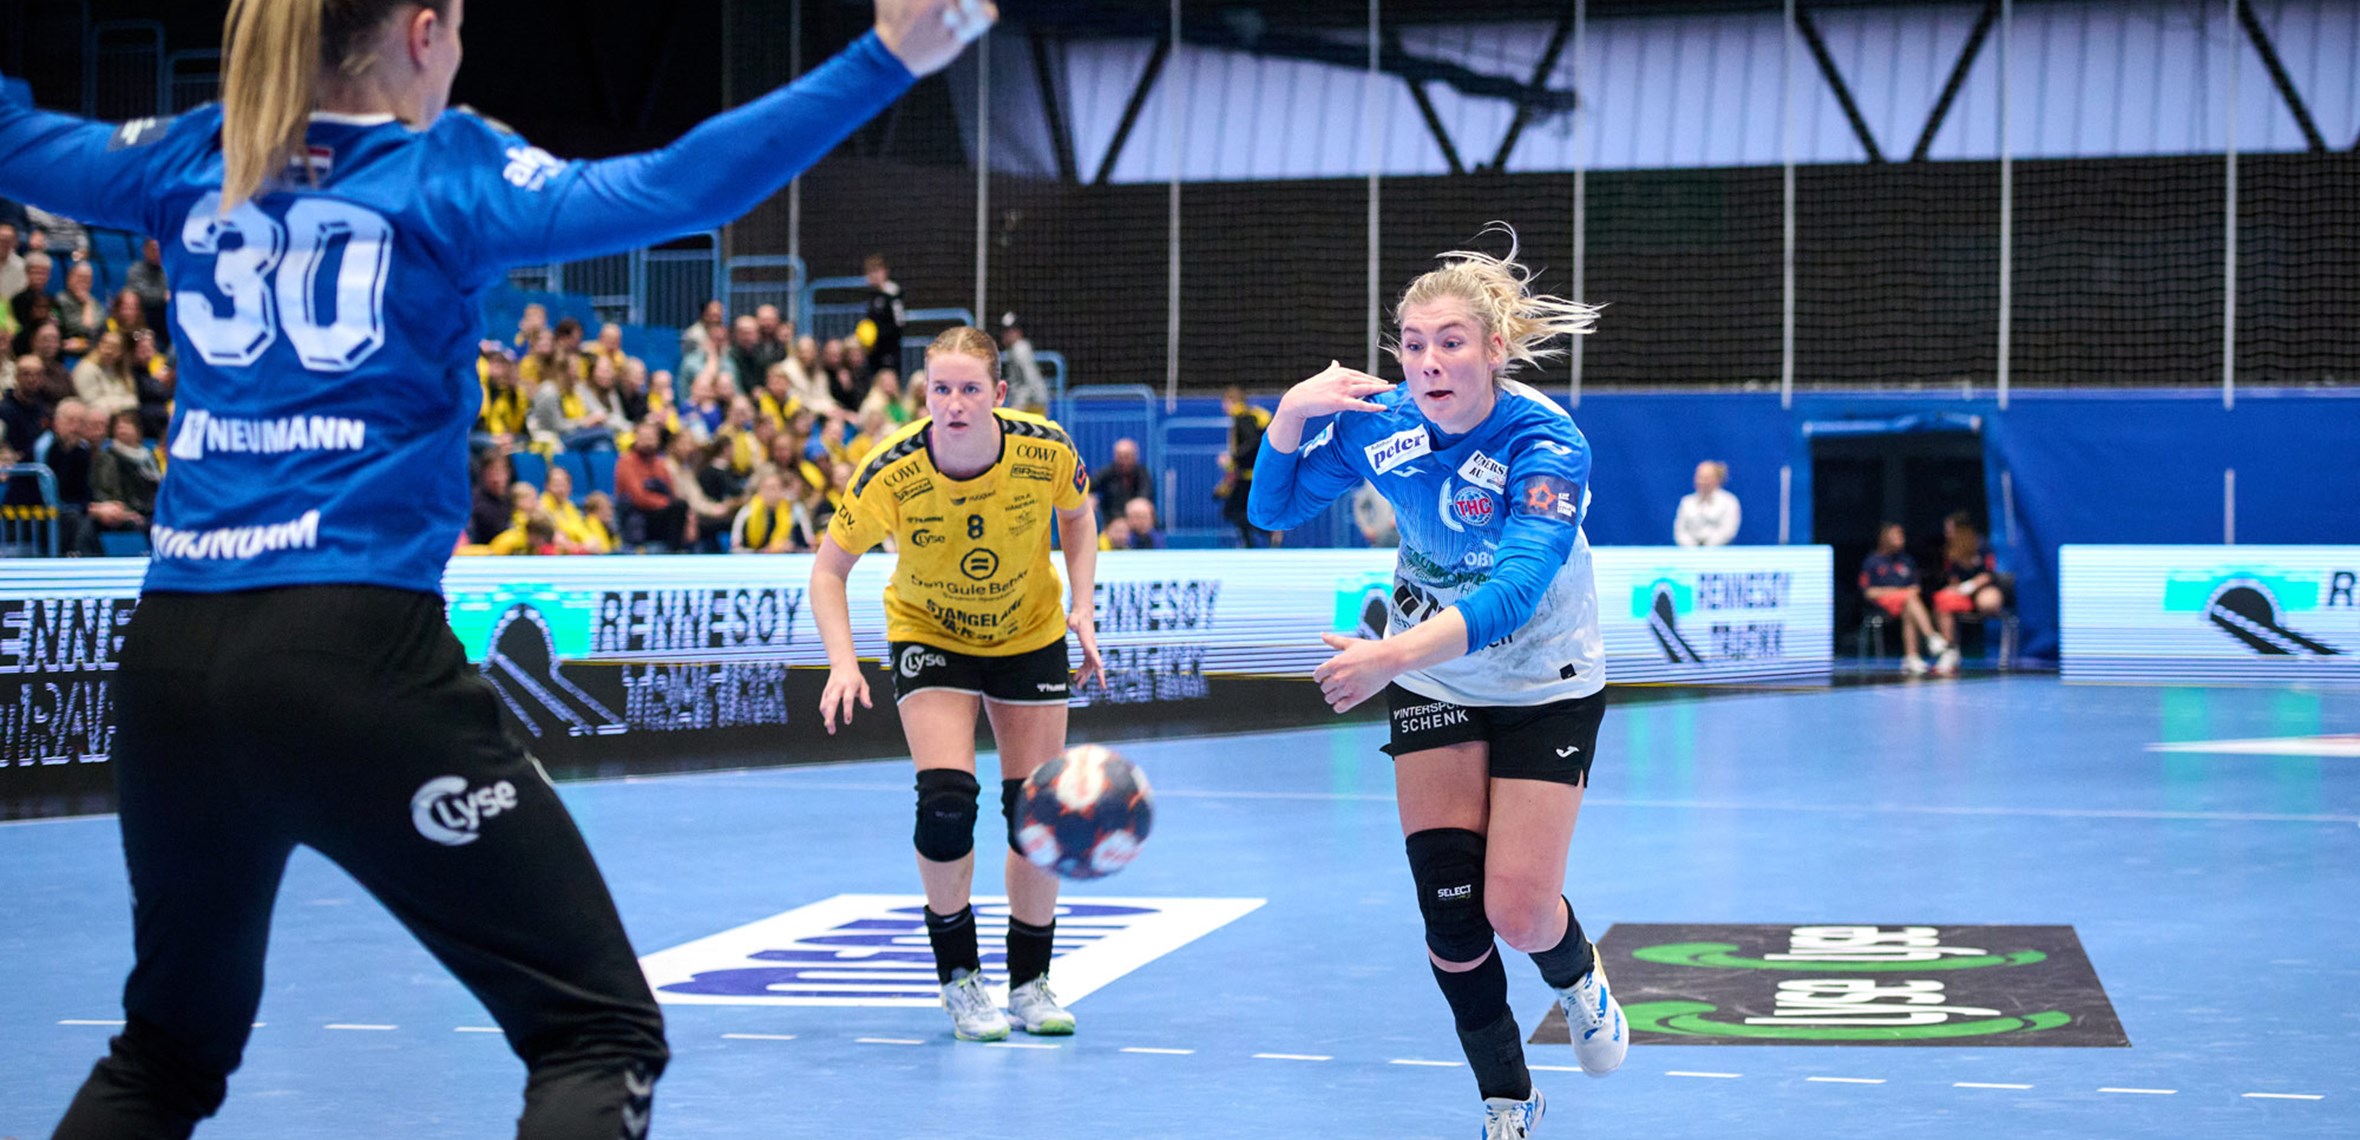 NATHALIE HENDRIKSE: „THÜRINGER IST STÄRKER ALS ERWARTET“ |  Ausgangspunkt des Handballs